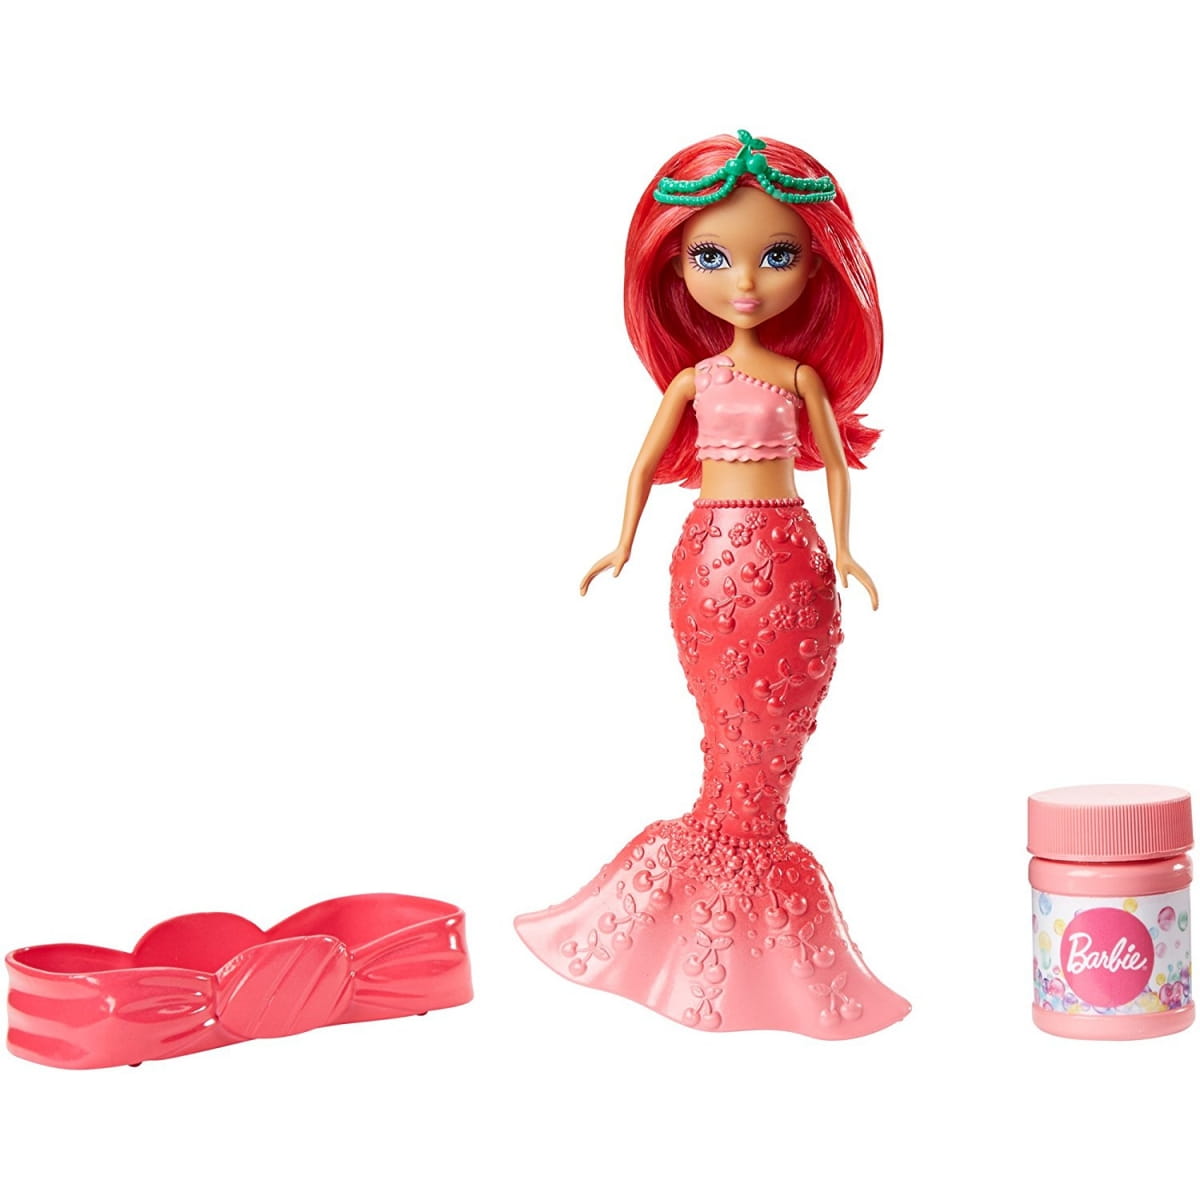   Barbie Dreamtopia     (Mattel)